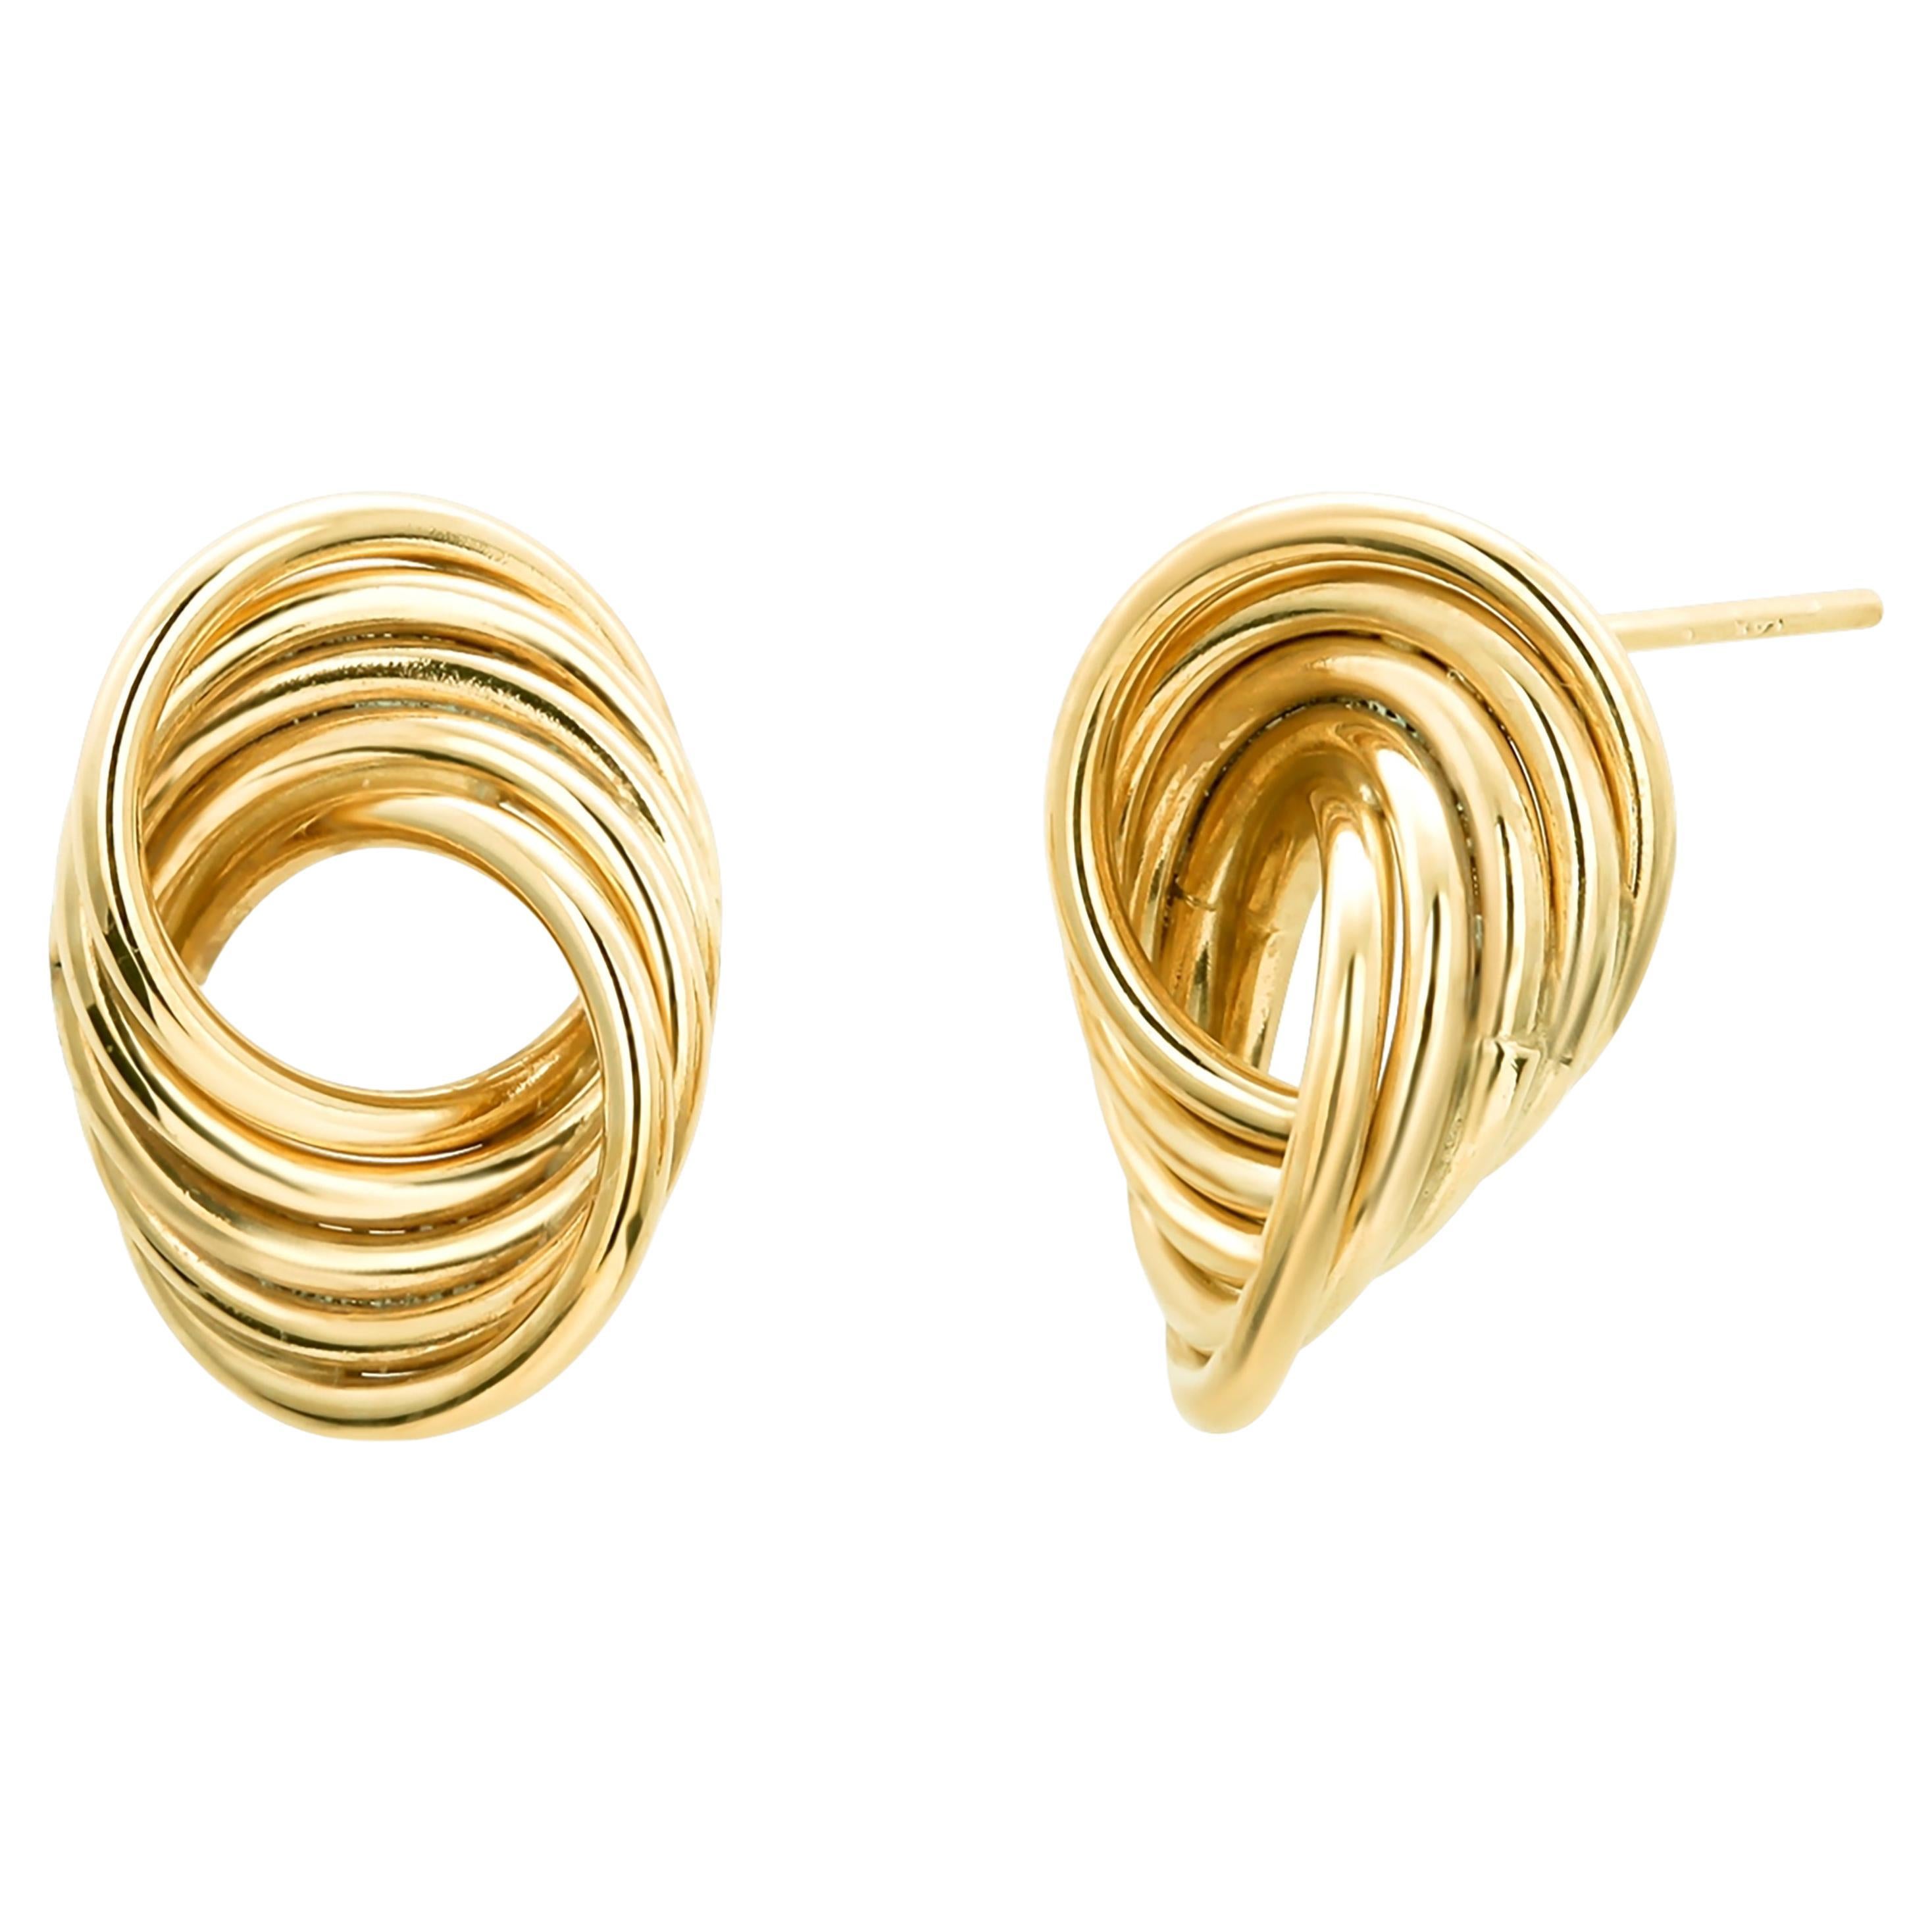 Fourteen Karat Yellow Gold Swirl Shaped Modernist 0.75 Inch Stud Earrings